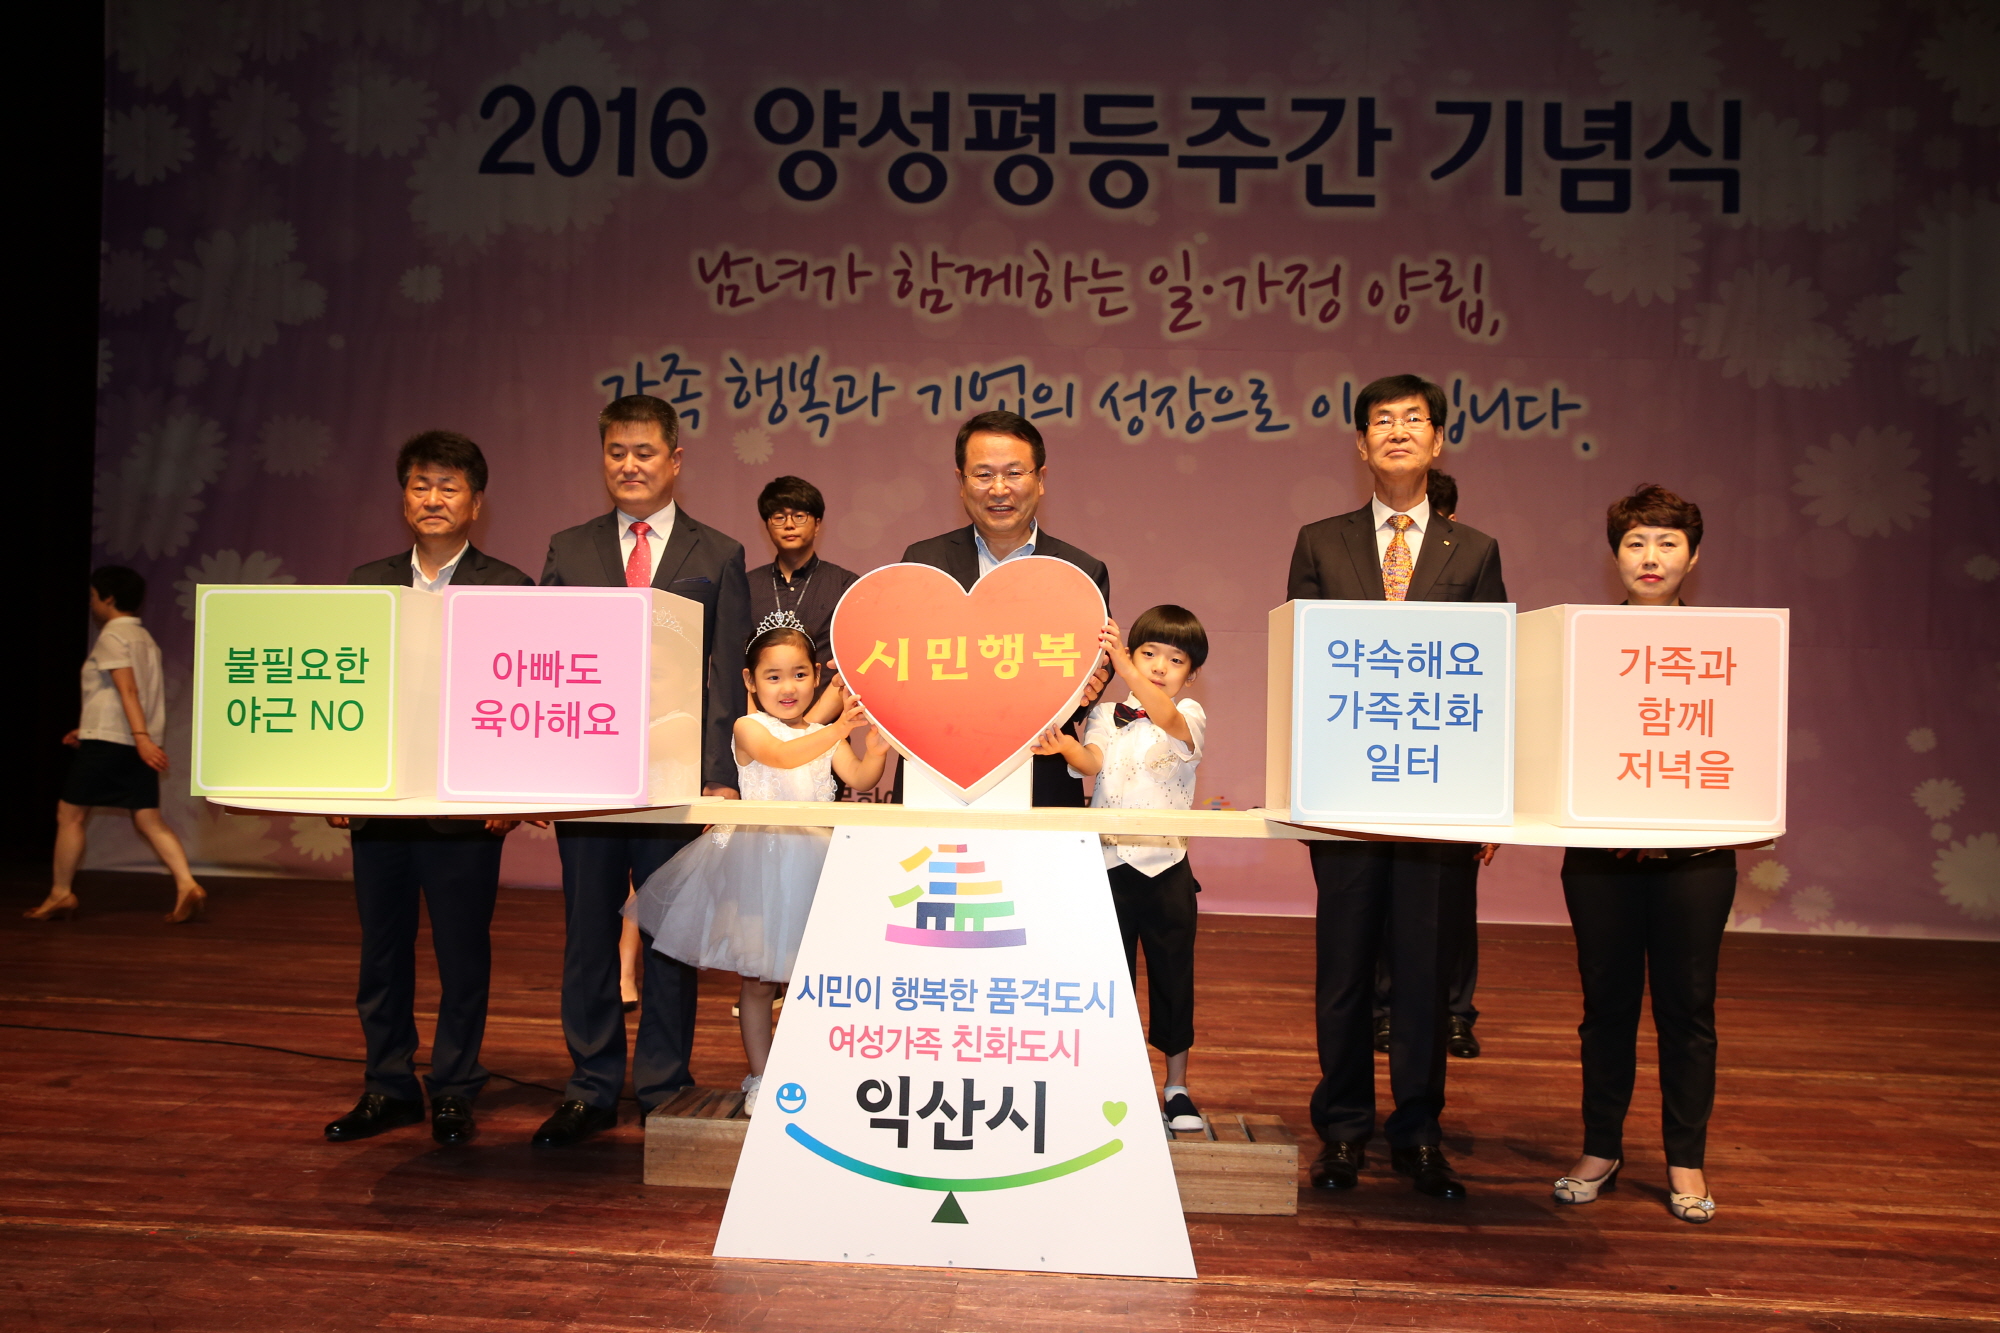 7월5일 2016년 양성평등주간 기념식 개최